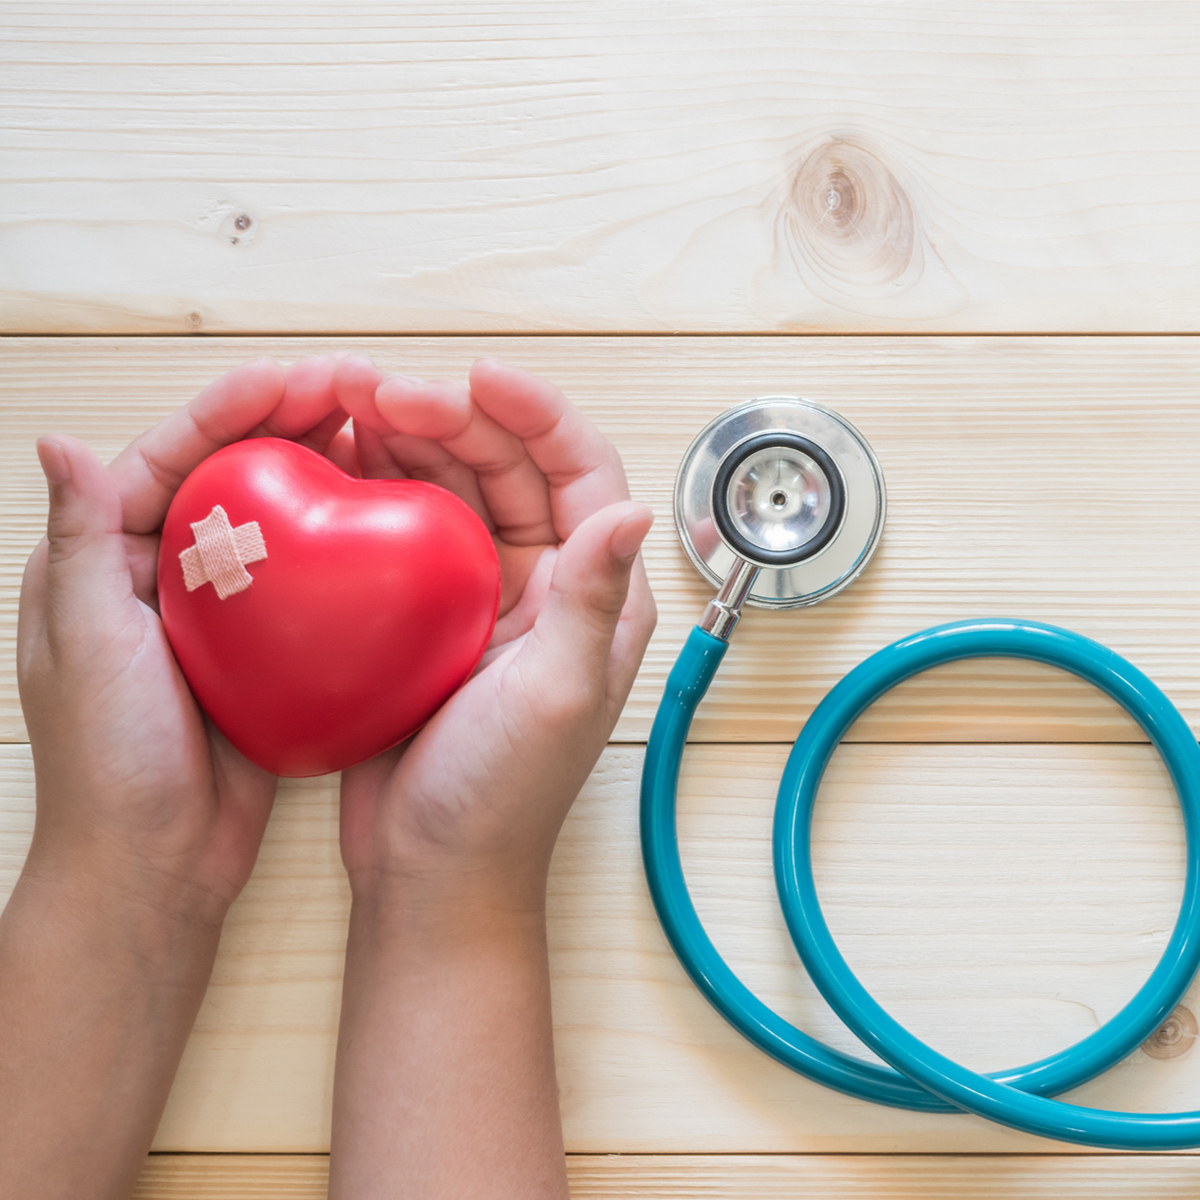 szív egészségügyi tények 2022 ford magas vérnyomás kezelés taktikája